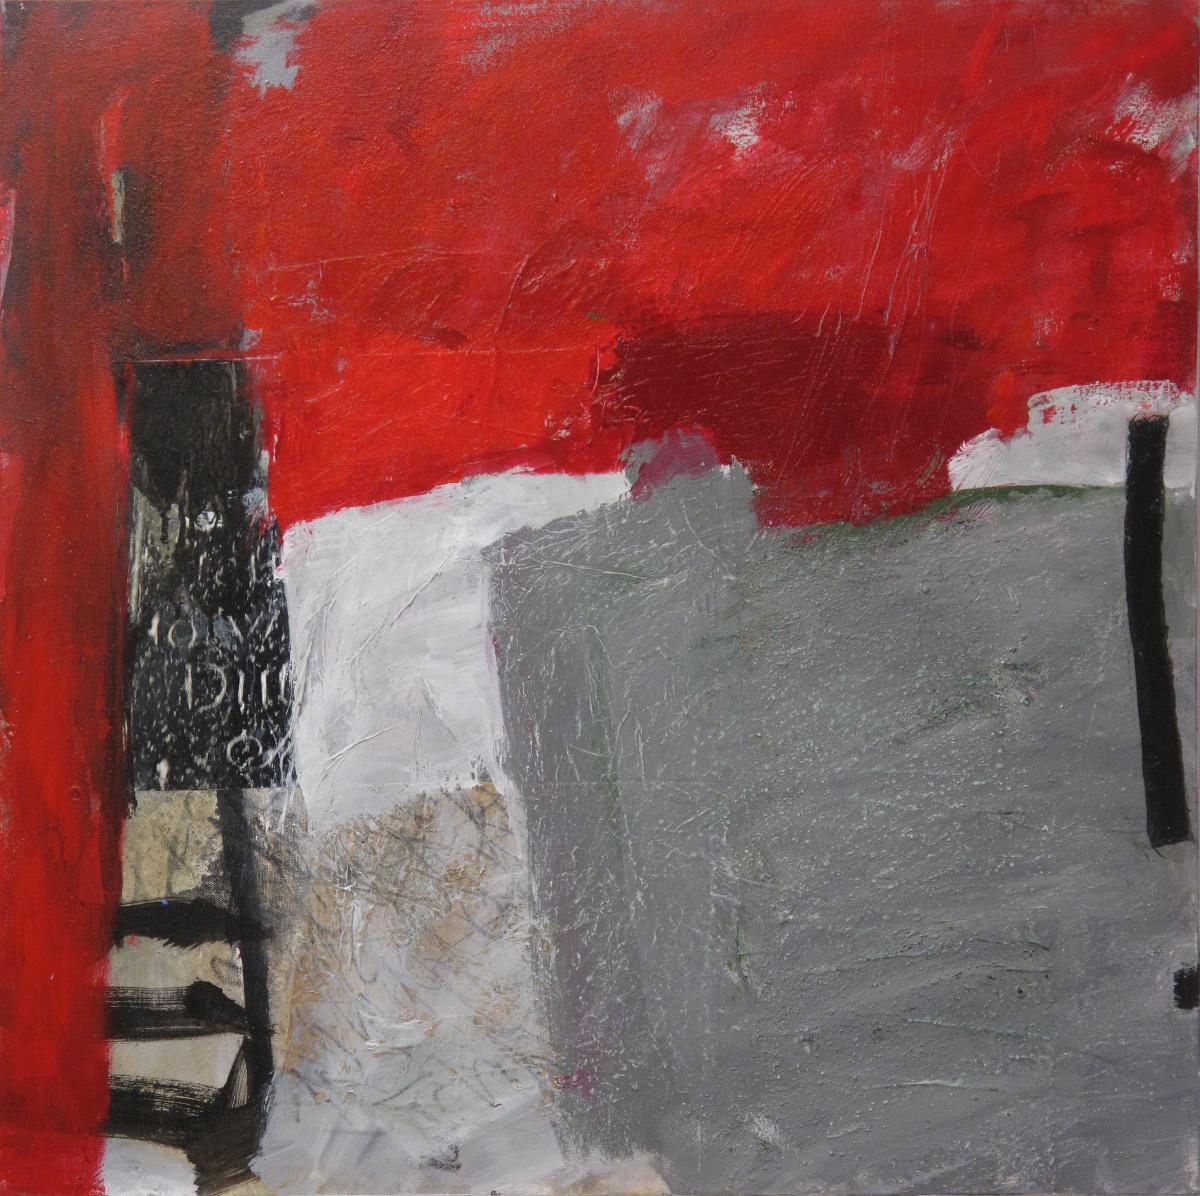 Magisches Rot I, 2012, Acryl und Collage auf Leinwand, 80 x 80 cm